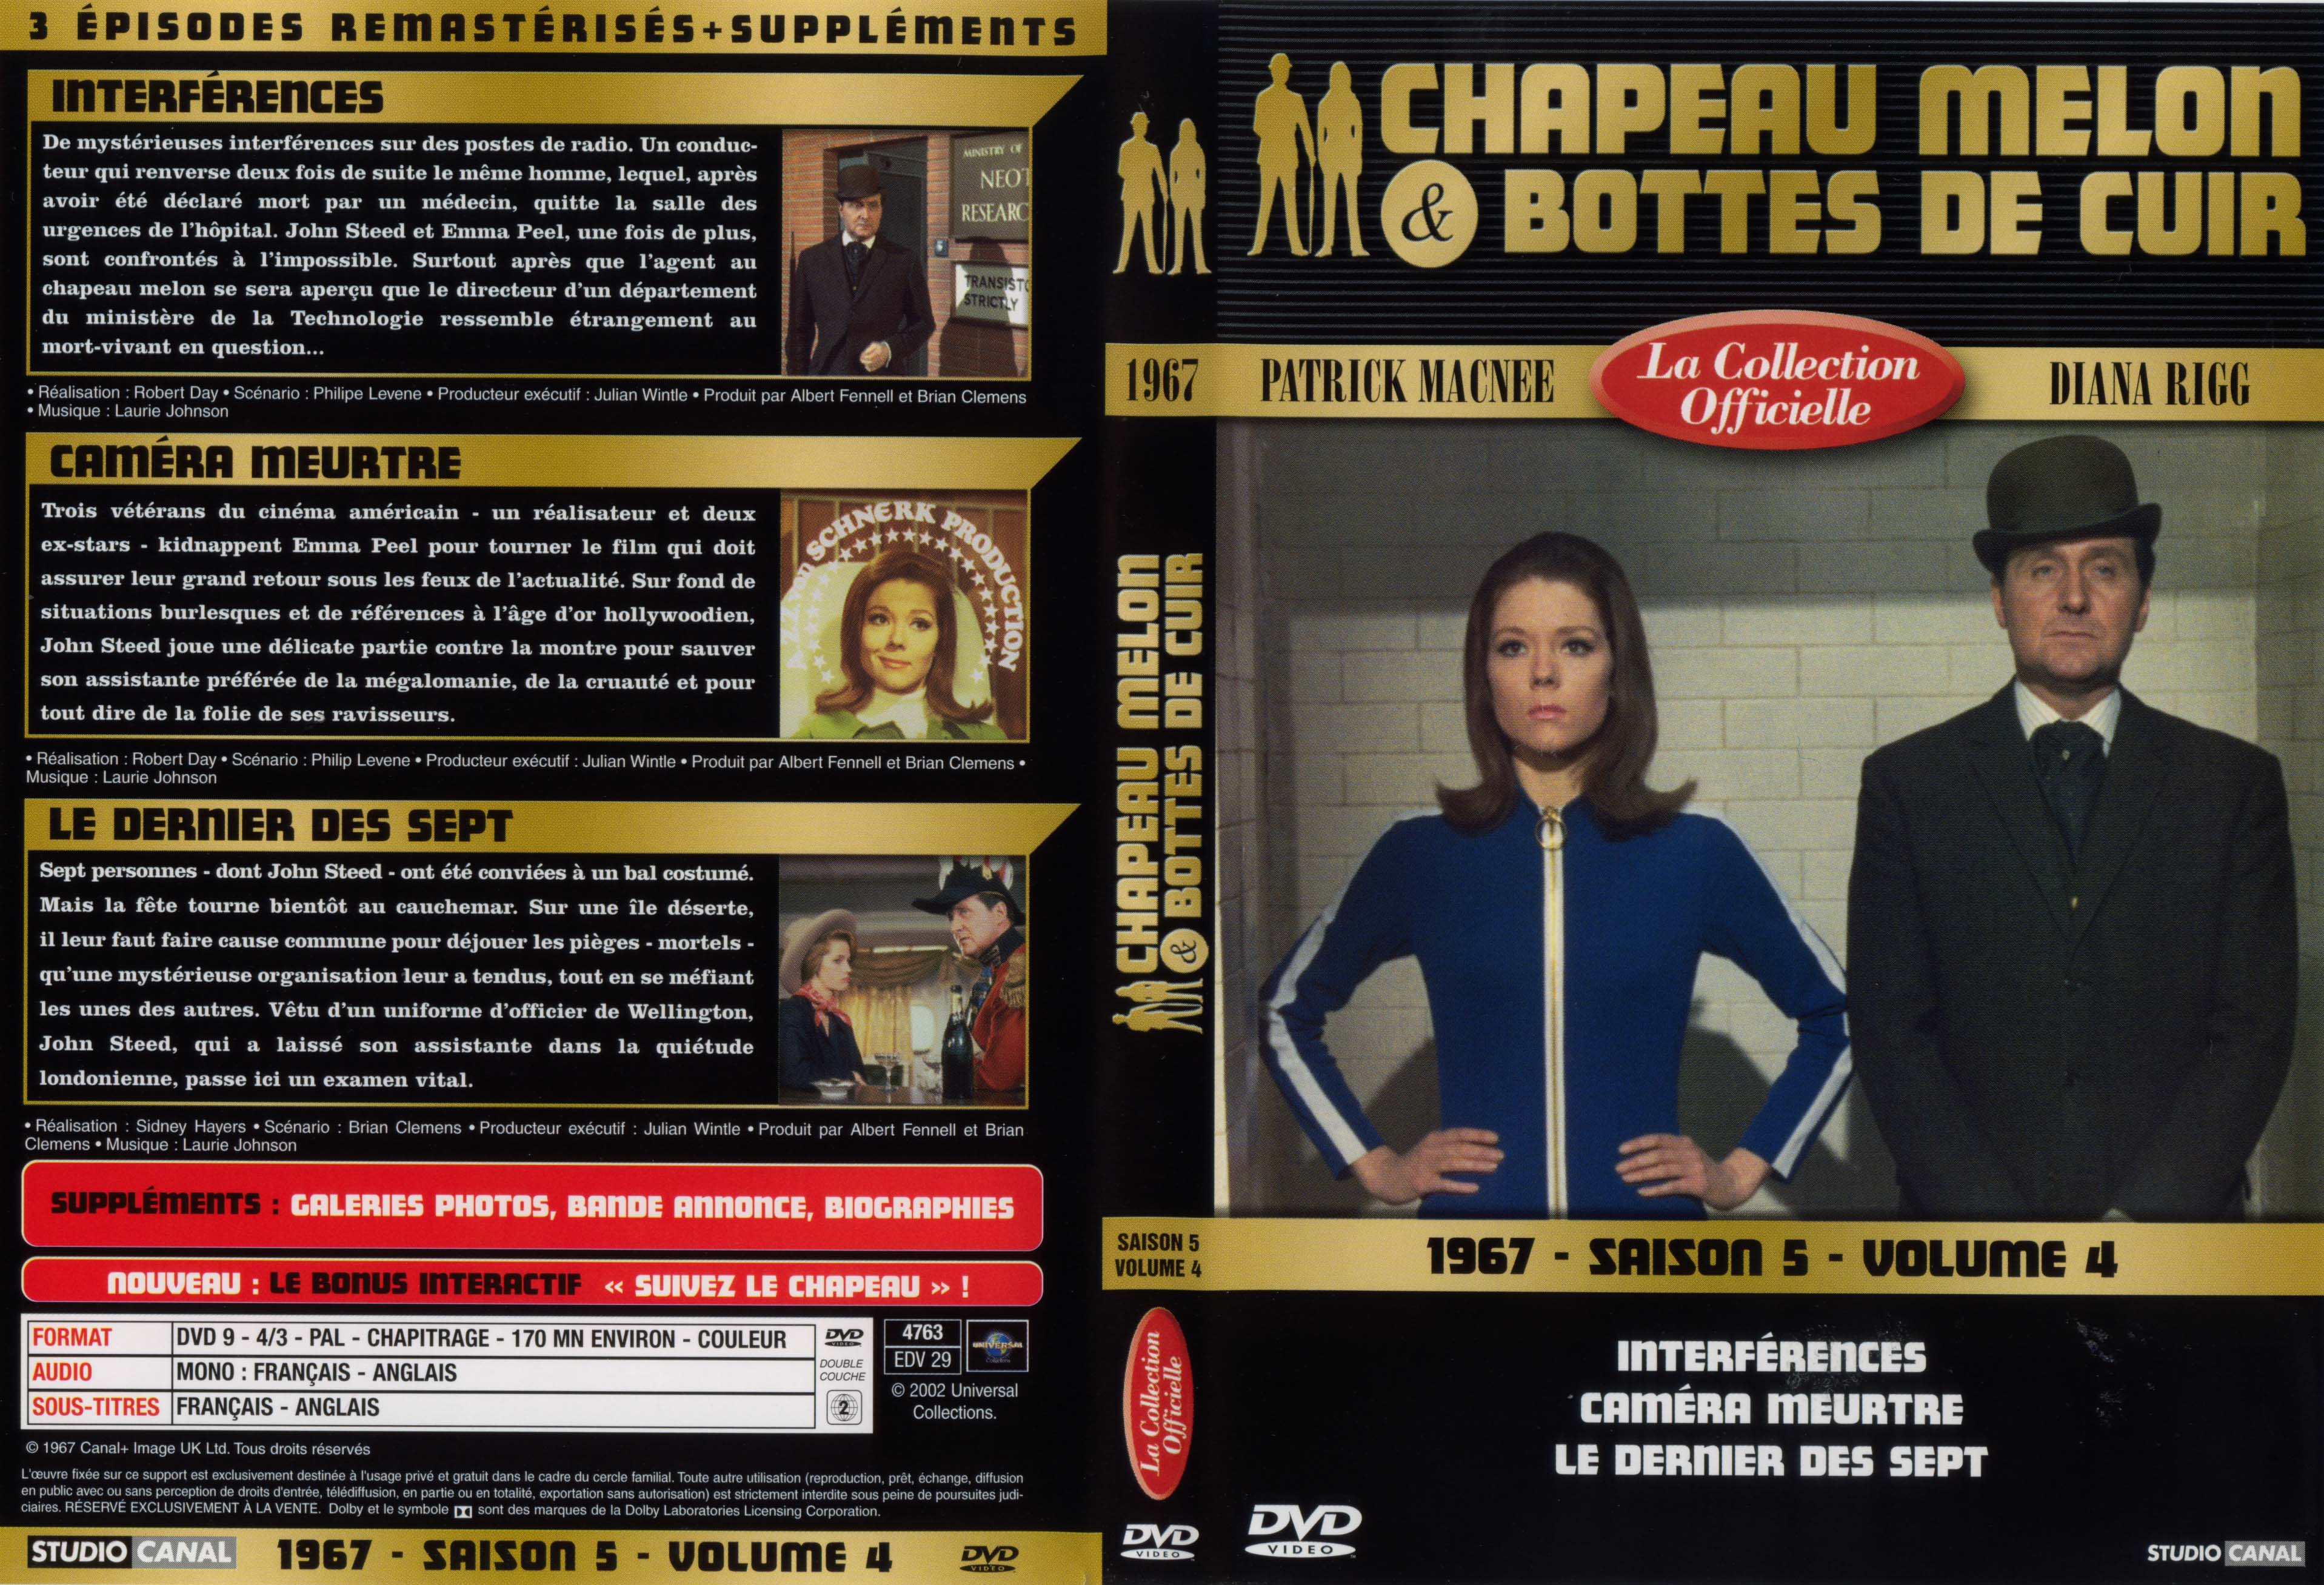 Jaquette DVD Chapeau melon et bottes de cuir 1967 saison 5 vol 4